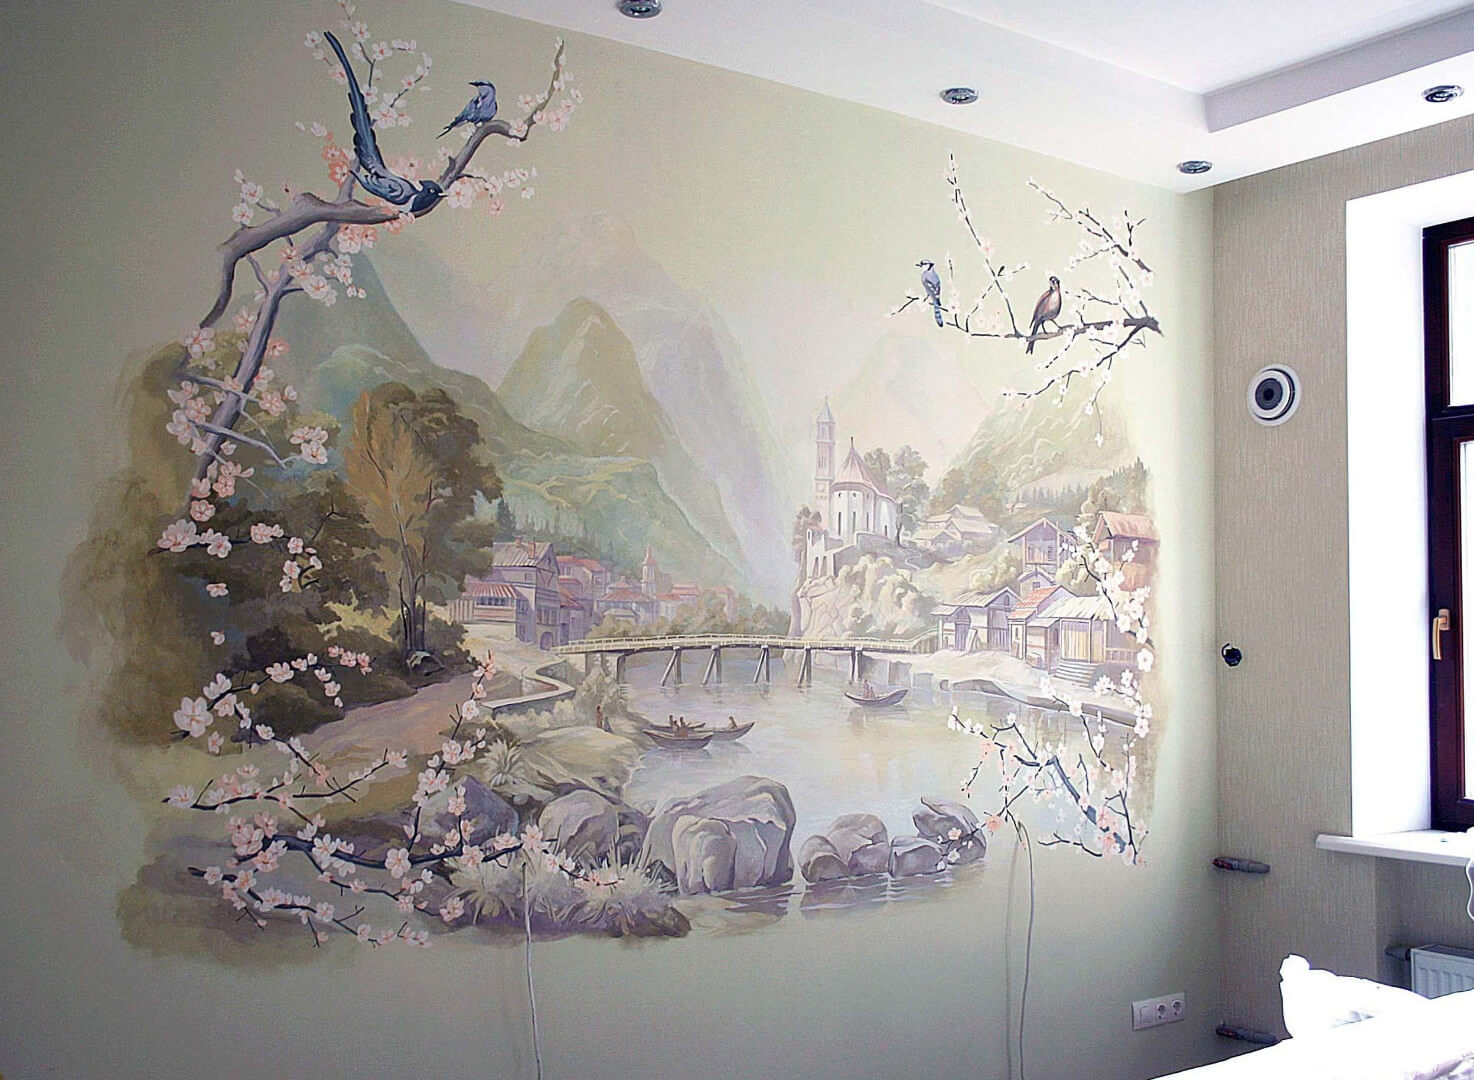 Художественная роспись стен - своими руками,фото, описание